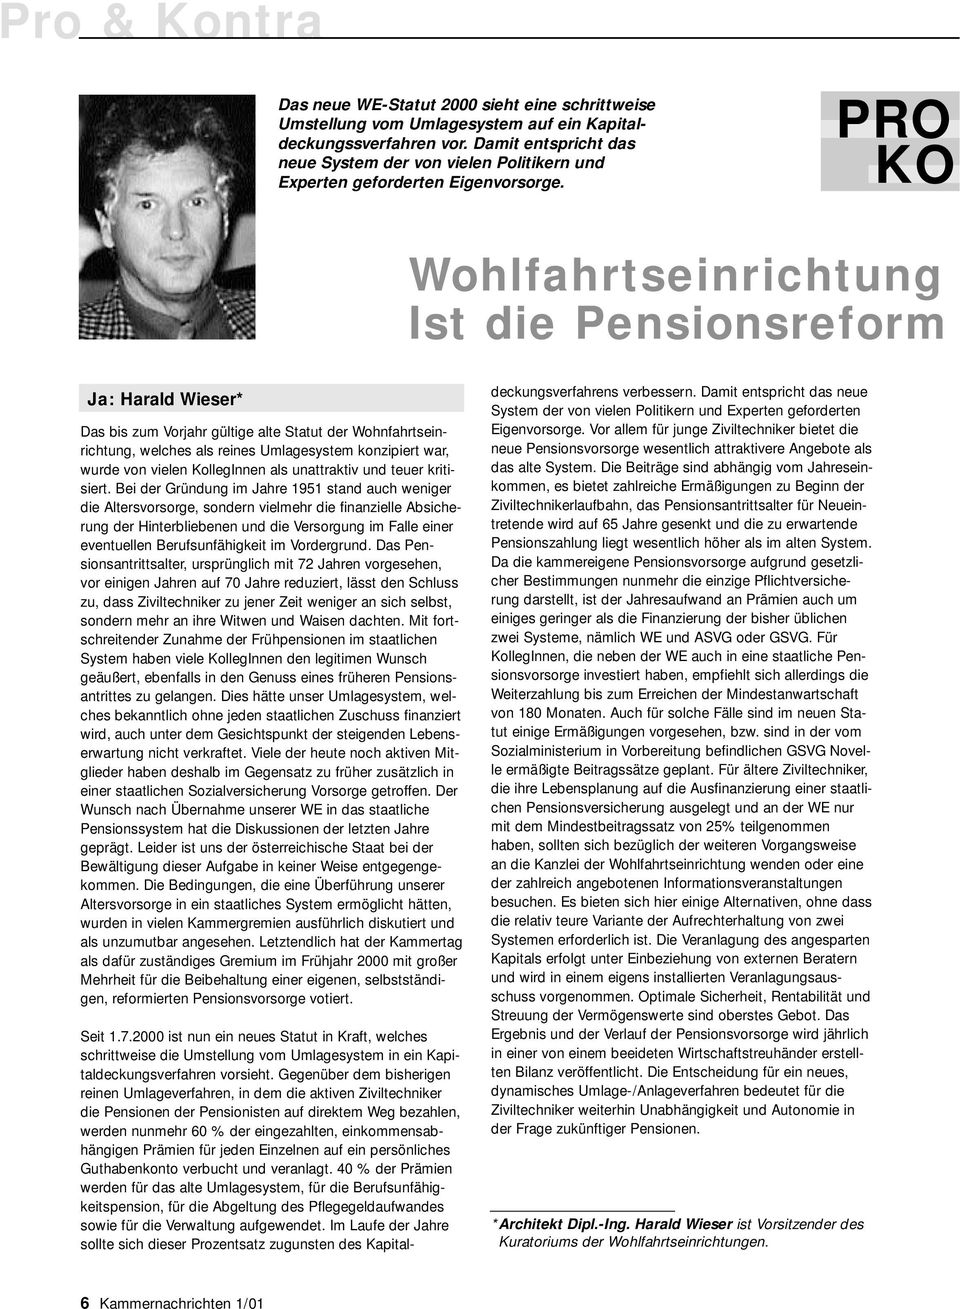 PRO KO Wohlfahrtseinrichtung Ist die Pensionsreform Ja: Harald Wieser* Das bis zum Vorjahr gültige alte Statut der Wohnfahrtseinrichtung, welches als reines Umlagesystem konzipiert war, wurde von